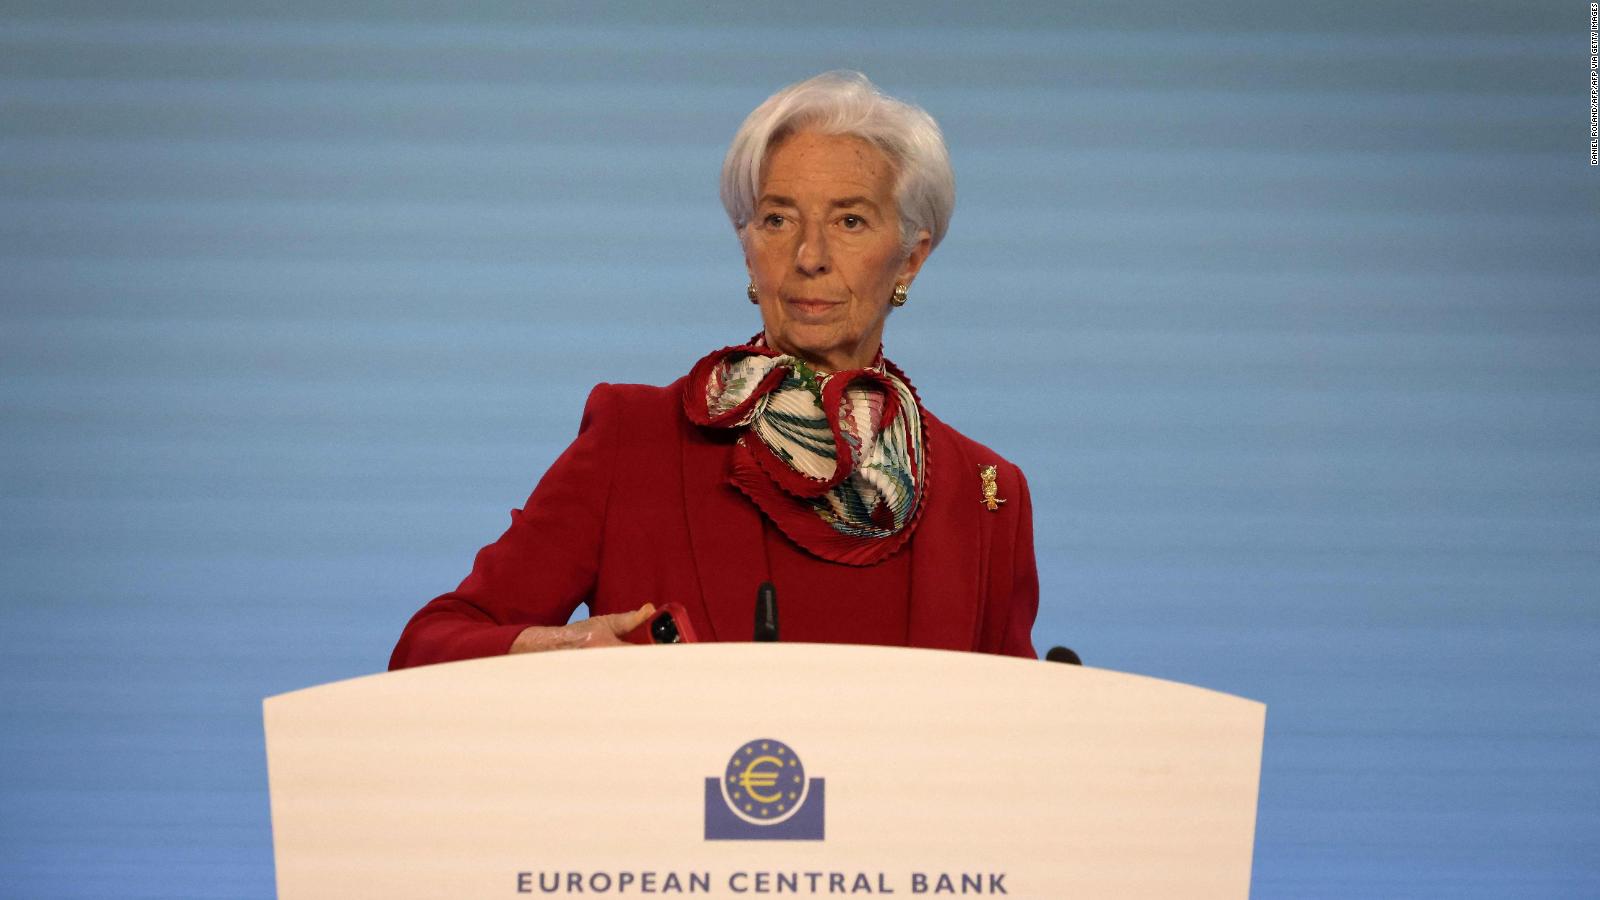 ¿Qué medidas ha anunciado el Banco Central Europeo?  |  Video